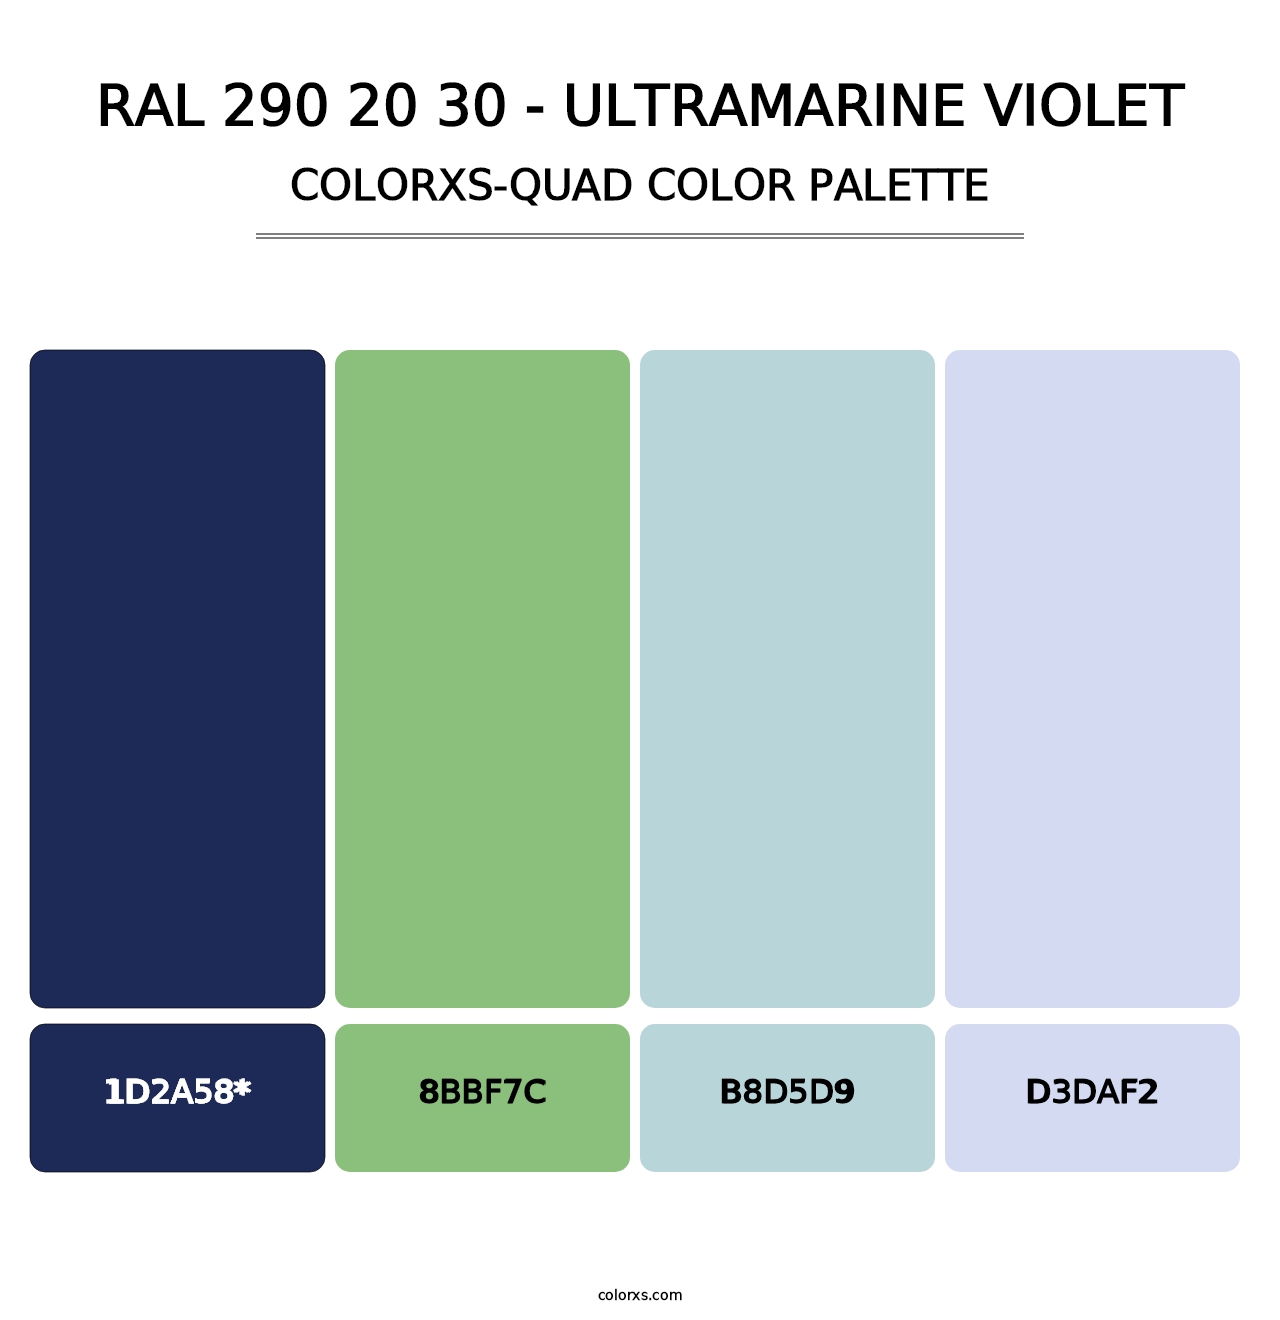 RAL 290 20 30 - Ultramarine Violet - Colorxs Quad Palette